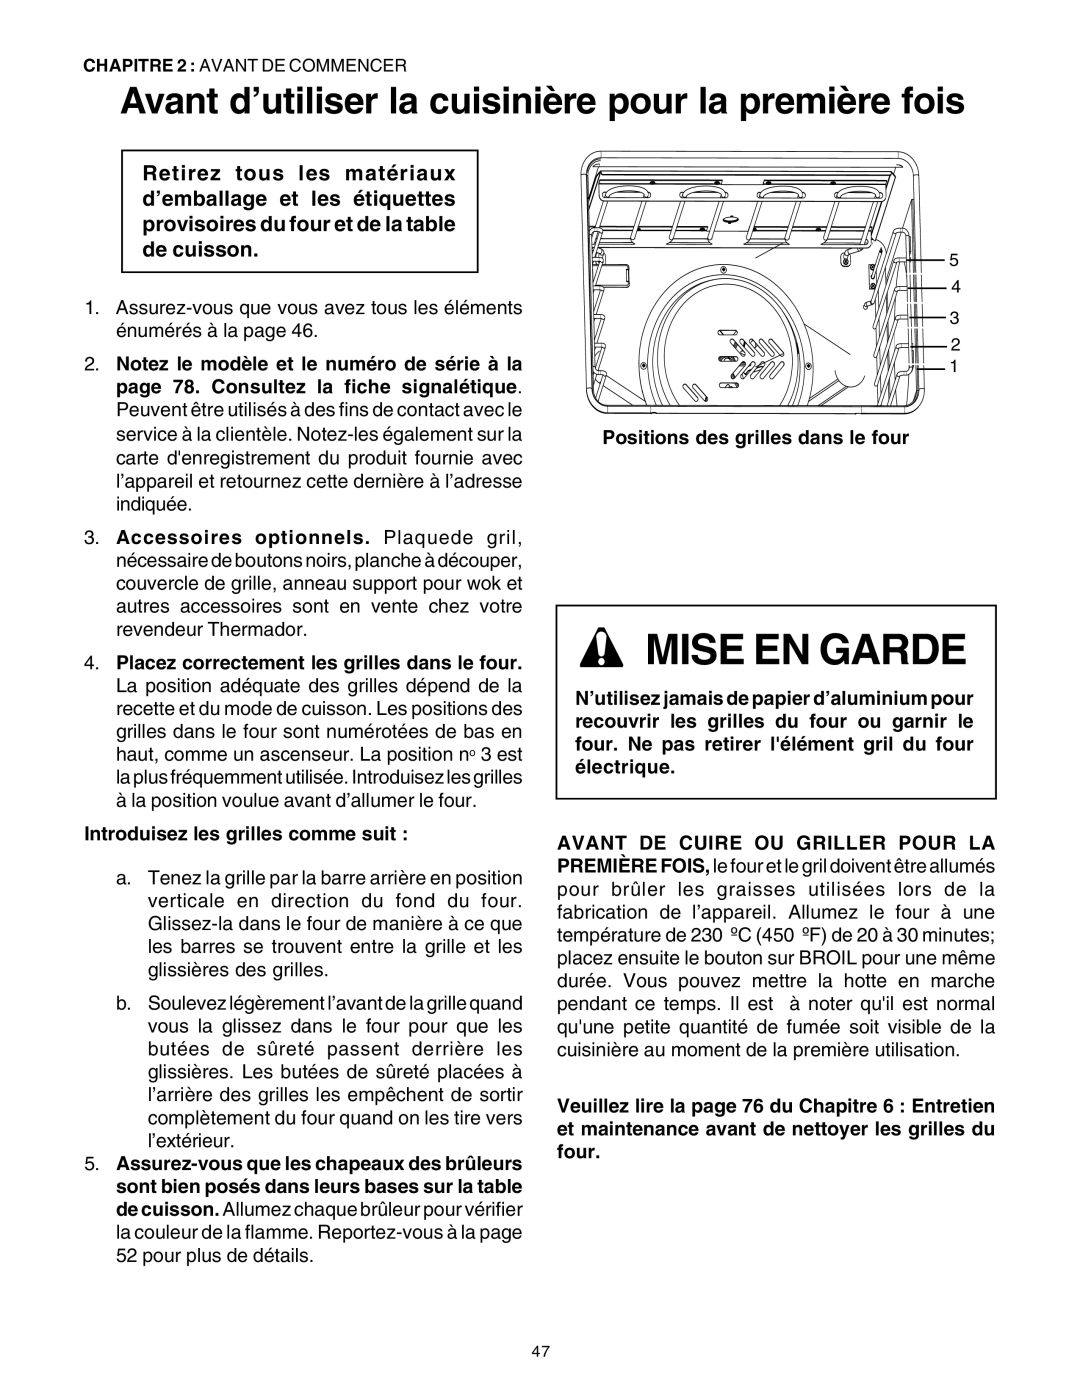 Thermador DP30 manual Mise En Garde, Introduisez les grilles comme suit, Positions des grilles dans le four 